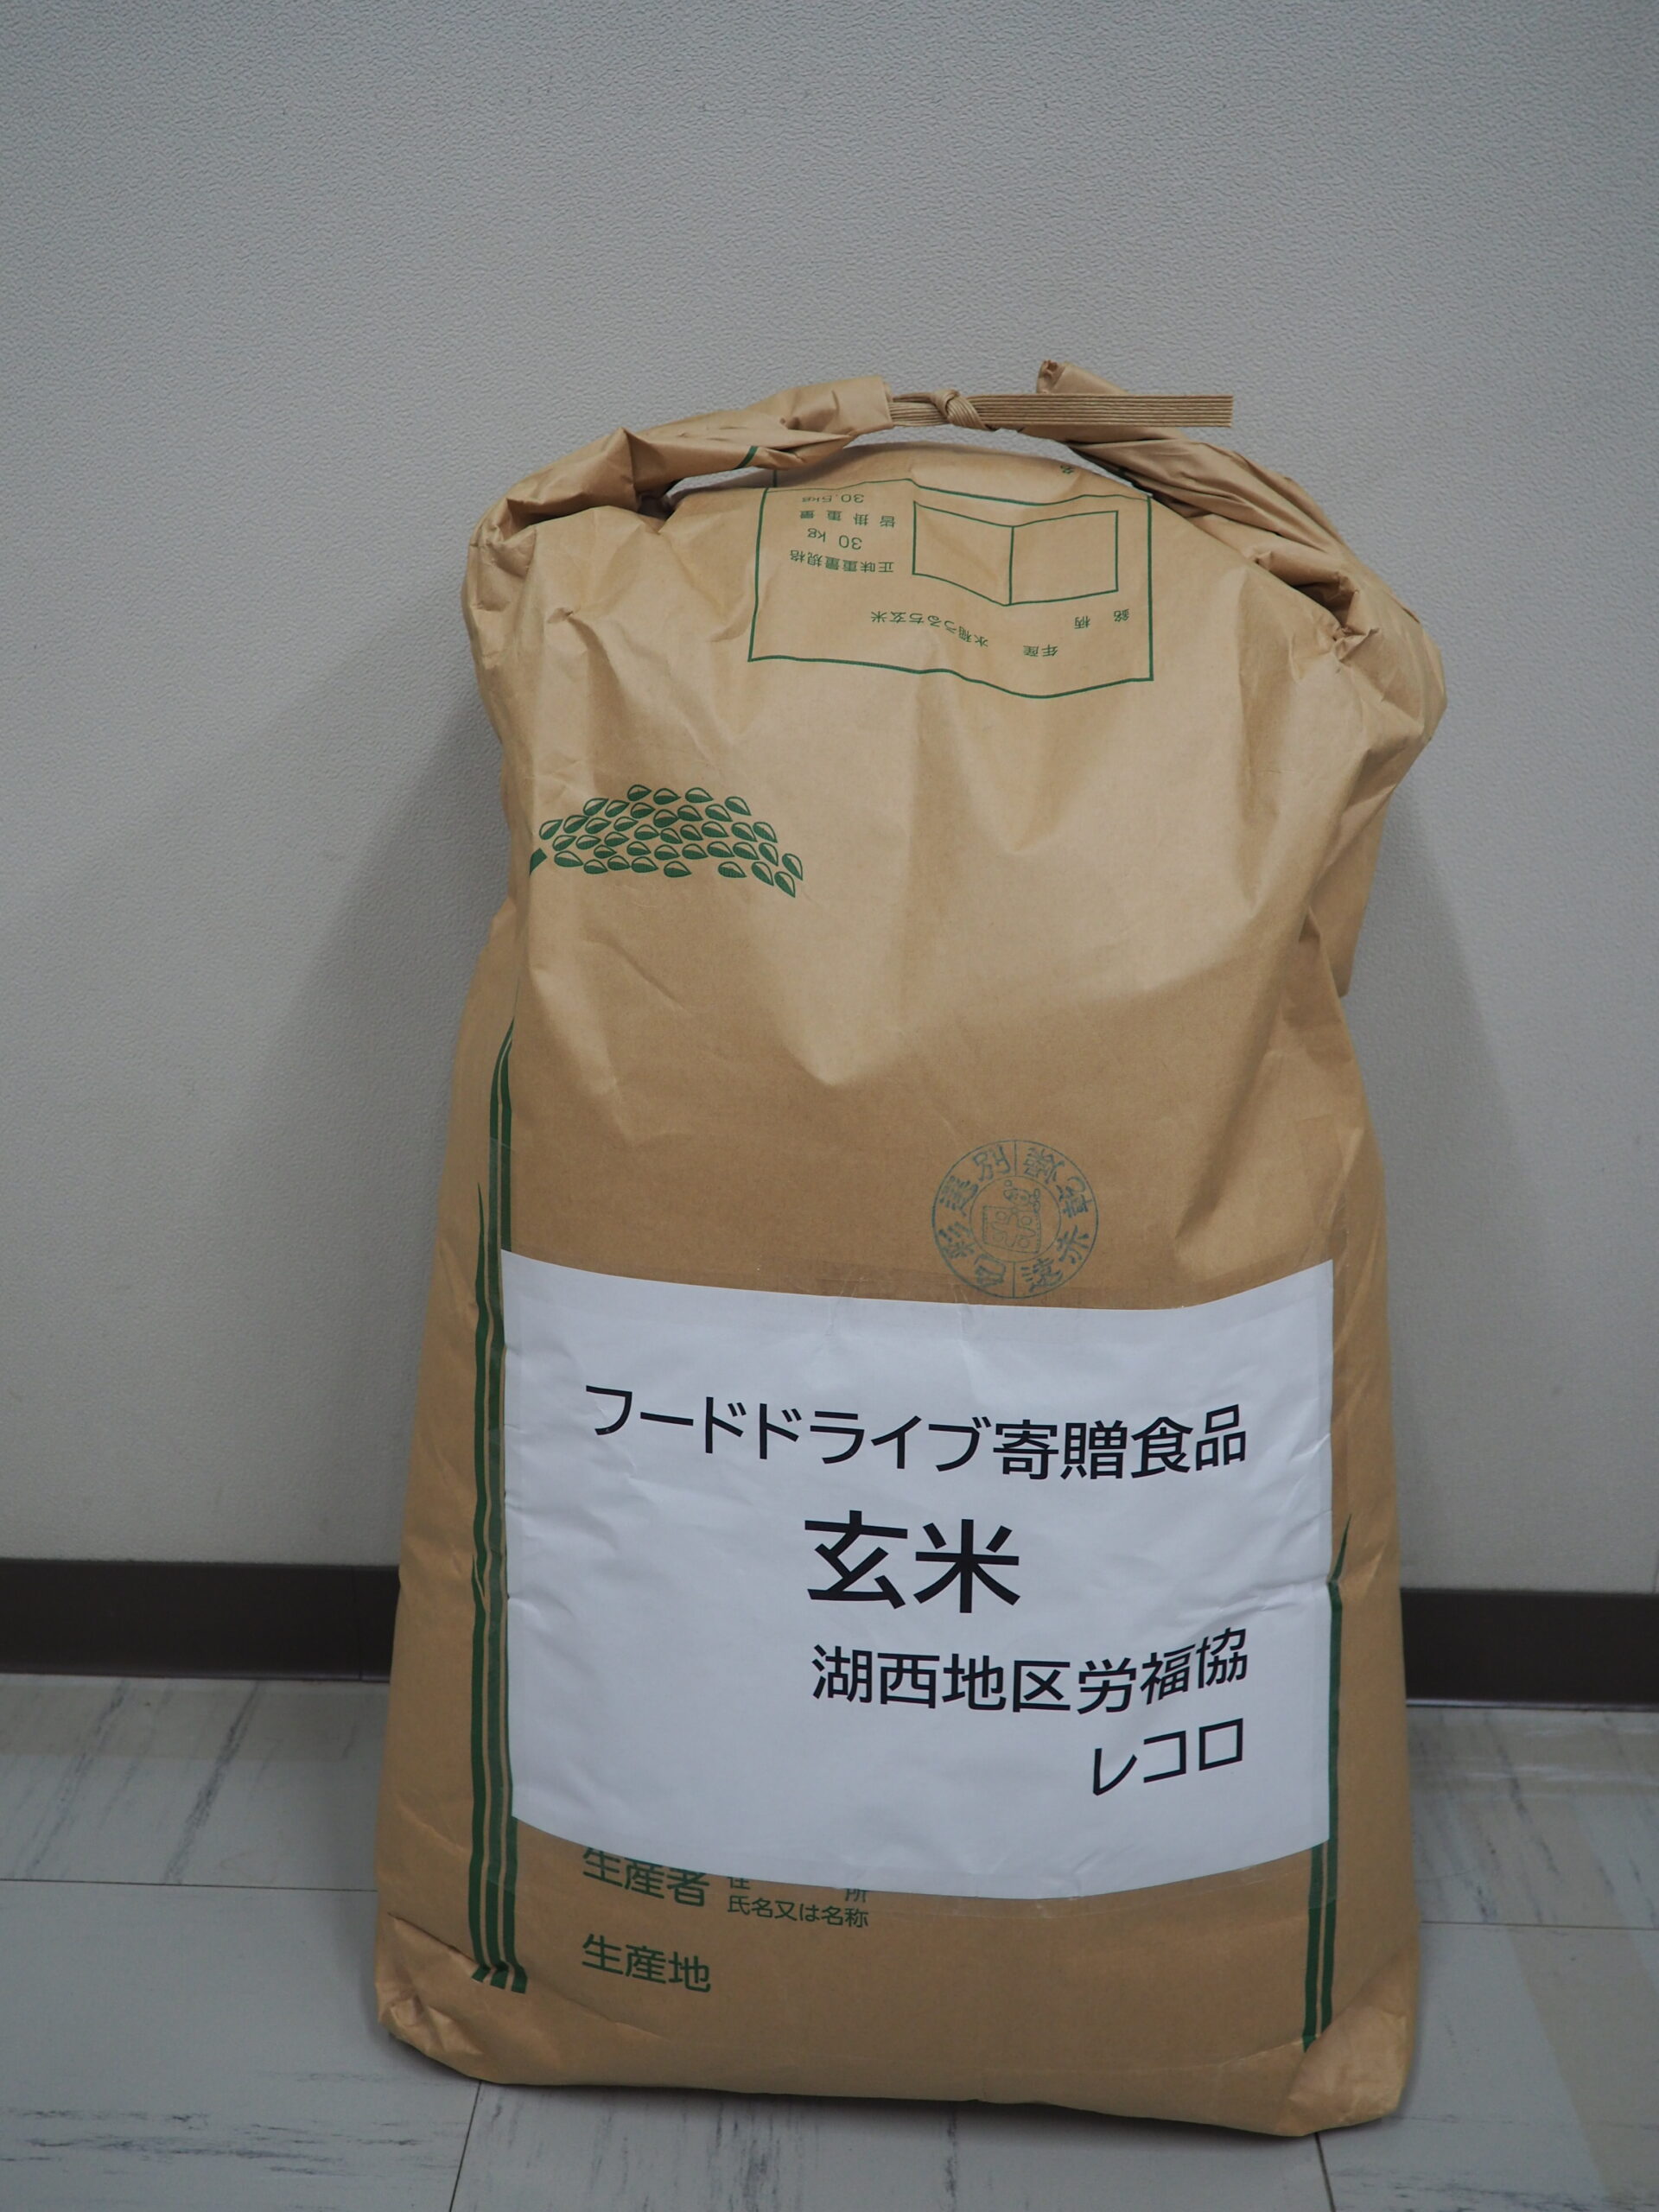 湖西地区労福協様・全矢崎労働組合裾野支部様から食品を提供いただきました。